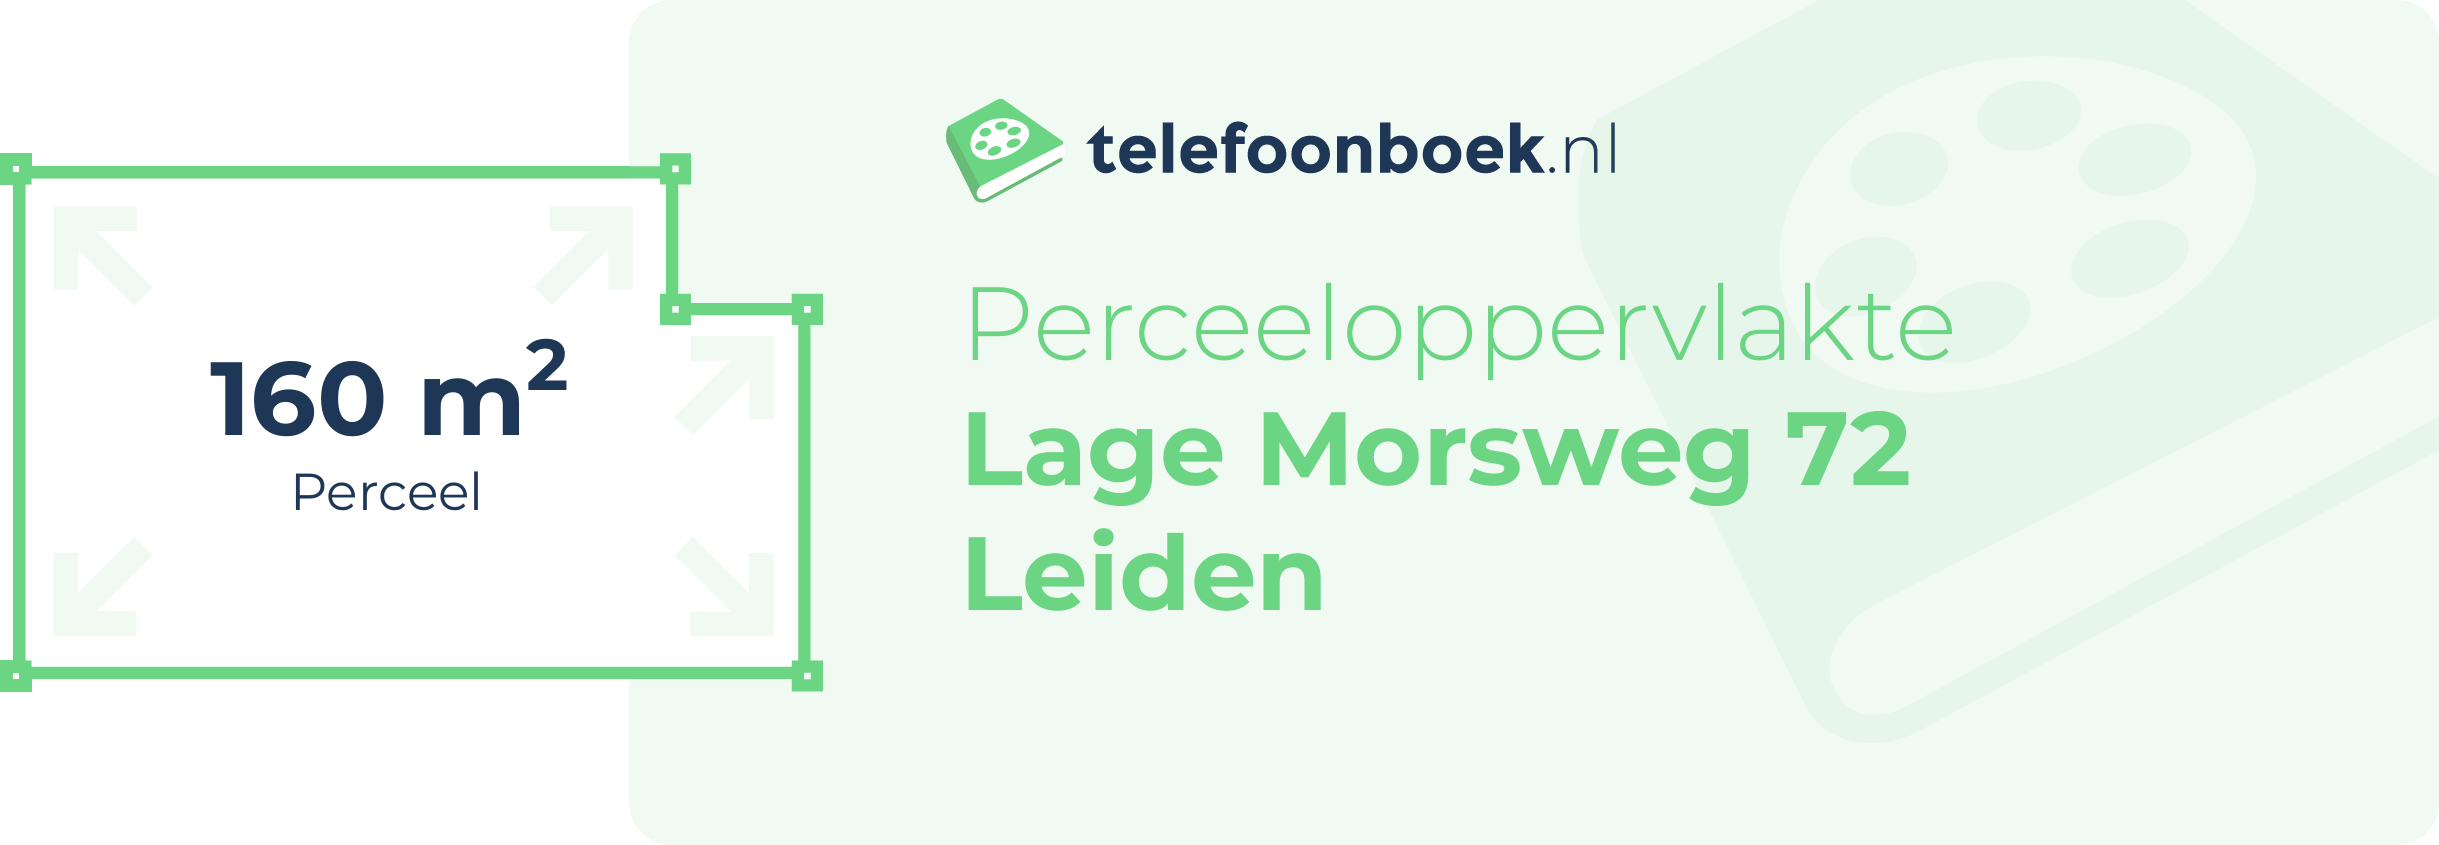 Perceeloppervlakte Lage Morsweg 72 Leiden